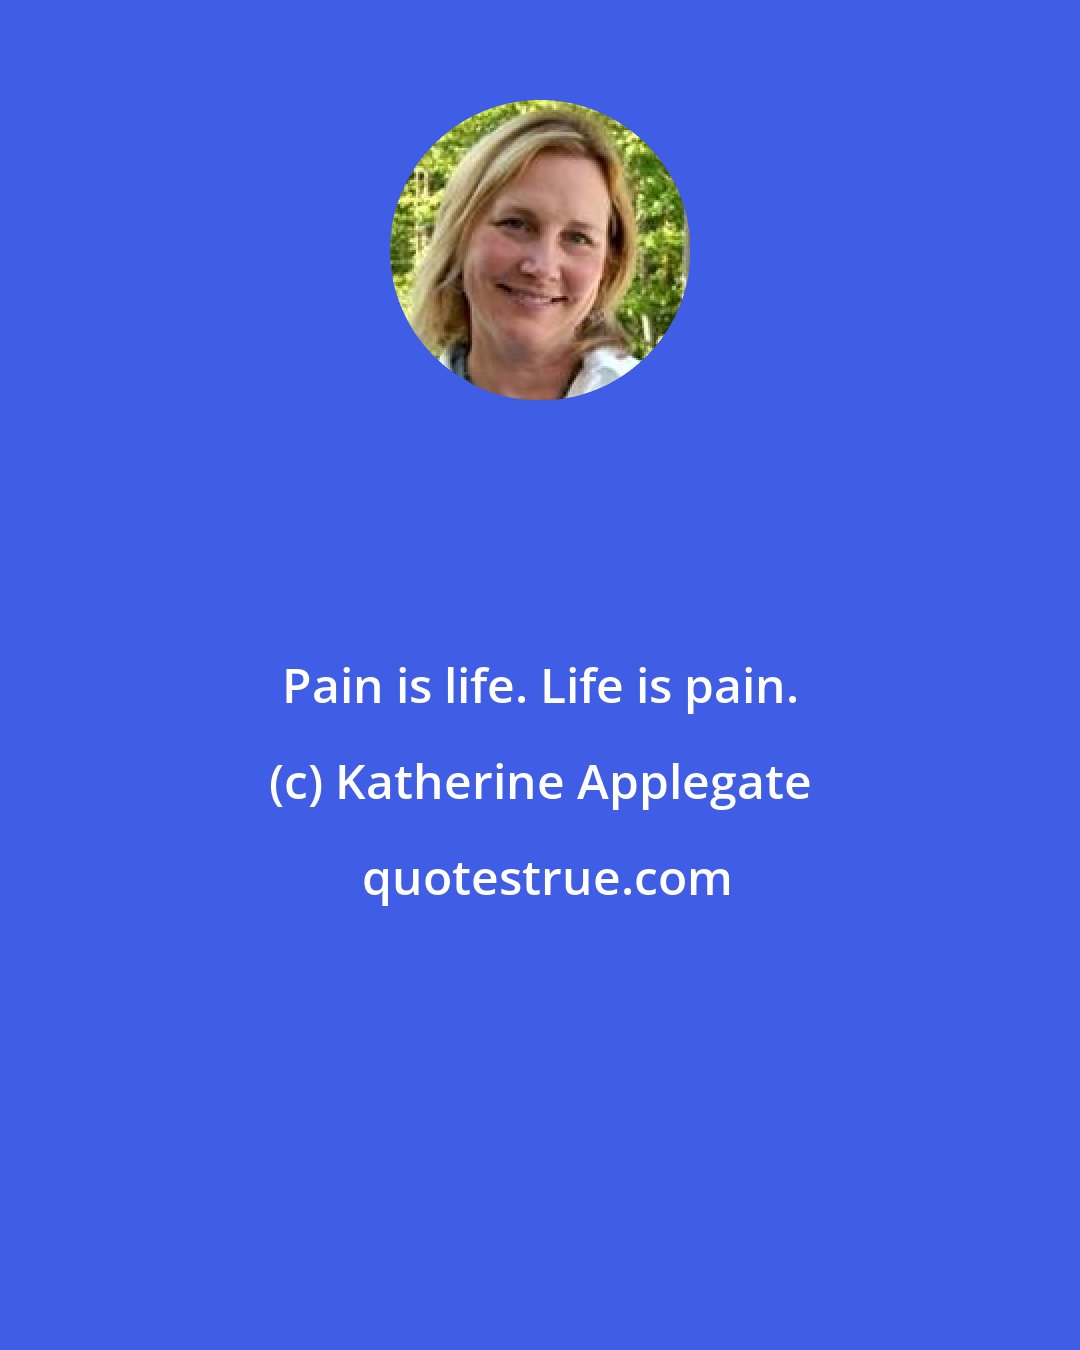 Katherine Applegate: Pain is life. Life is pain.